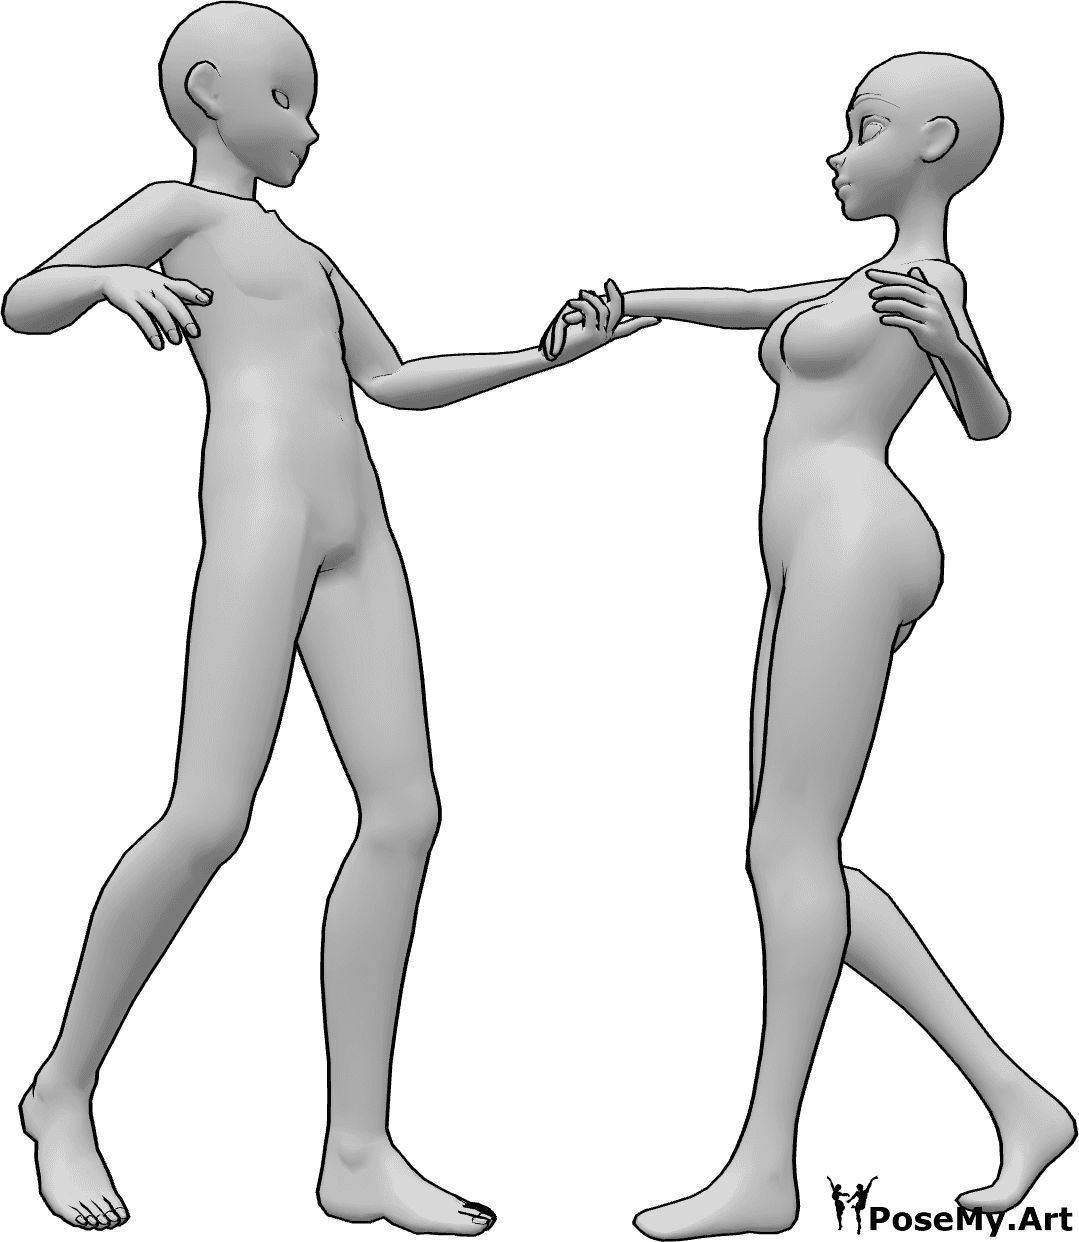 Posen-Referenz- Anime tanzen Pose - Anime-Frau und -Mann tanzen, der Mann hält die rechte Hand der Frau